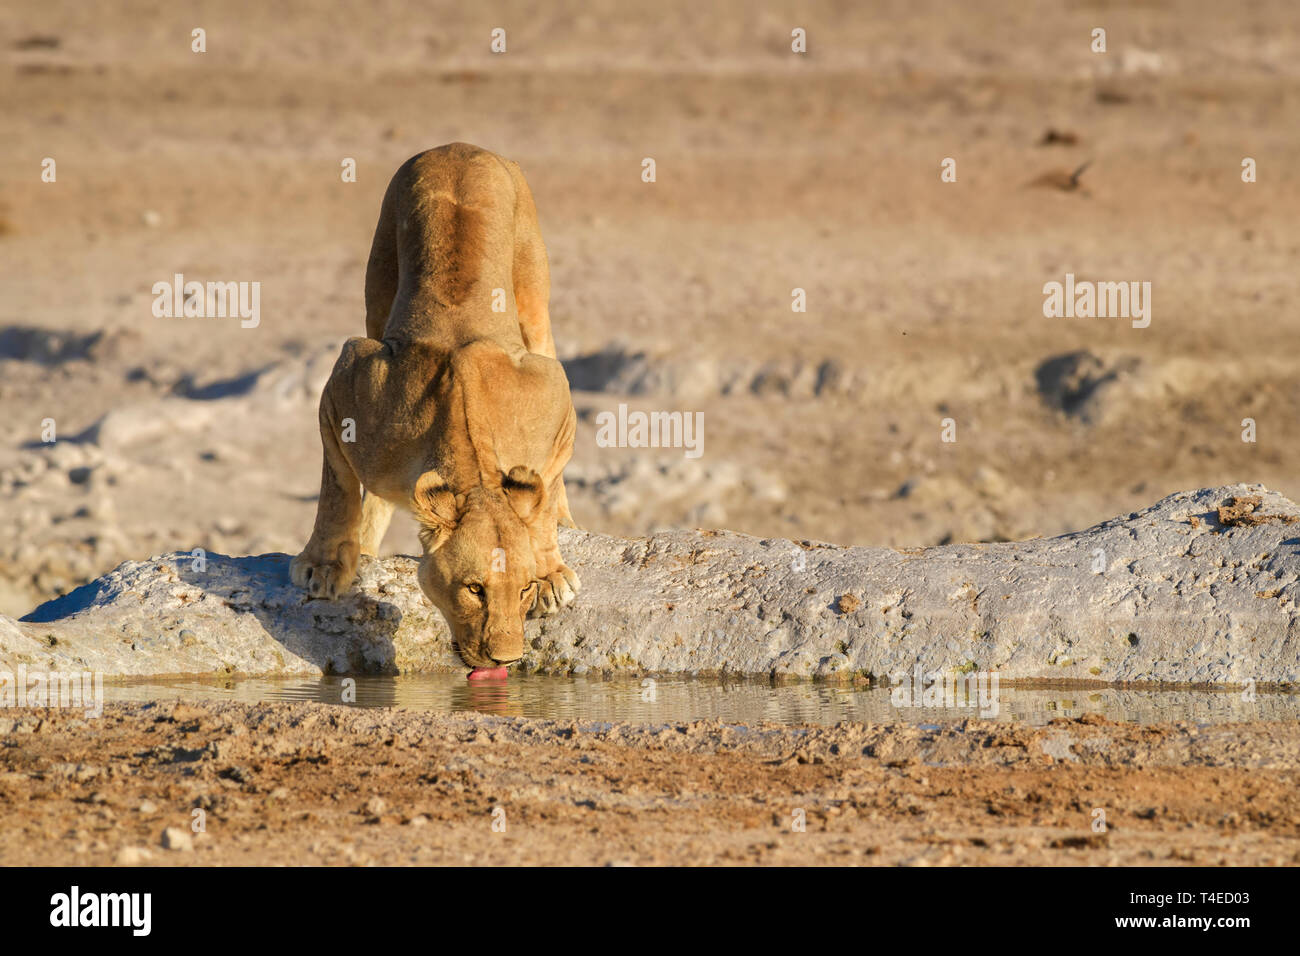 Von Lion Panthera leo, Wappentier aus afrikanischen Savannen, Etosha National Park, Namibia. Stockfoto